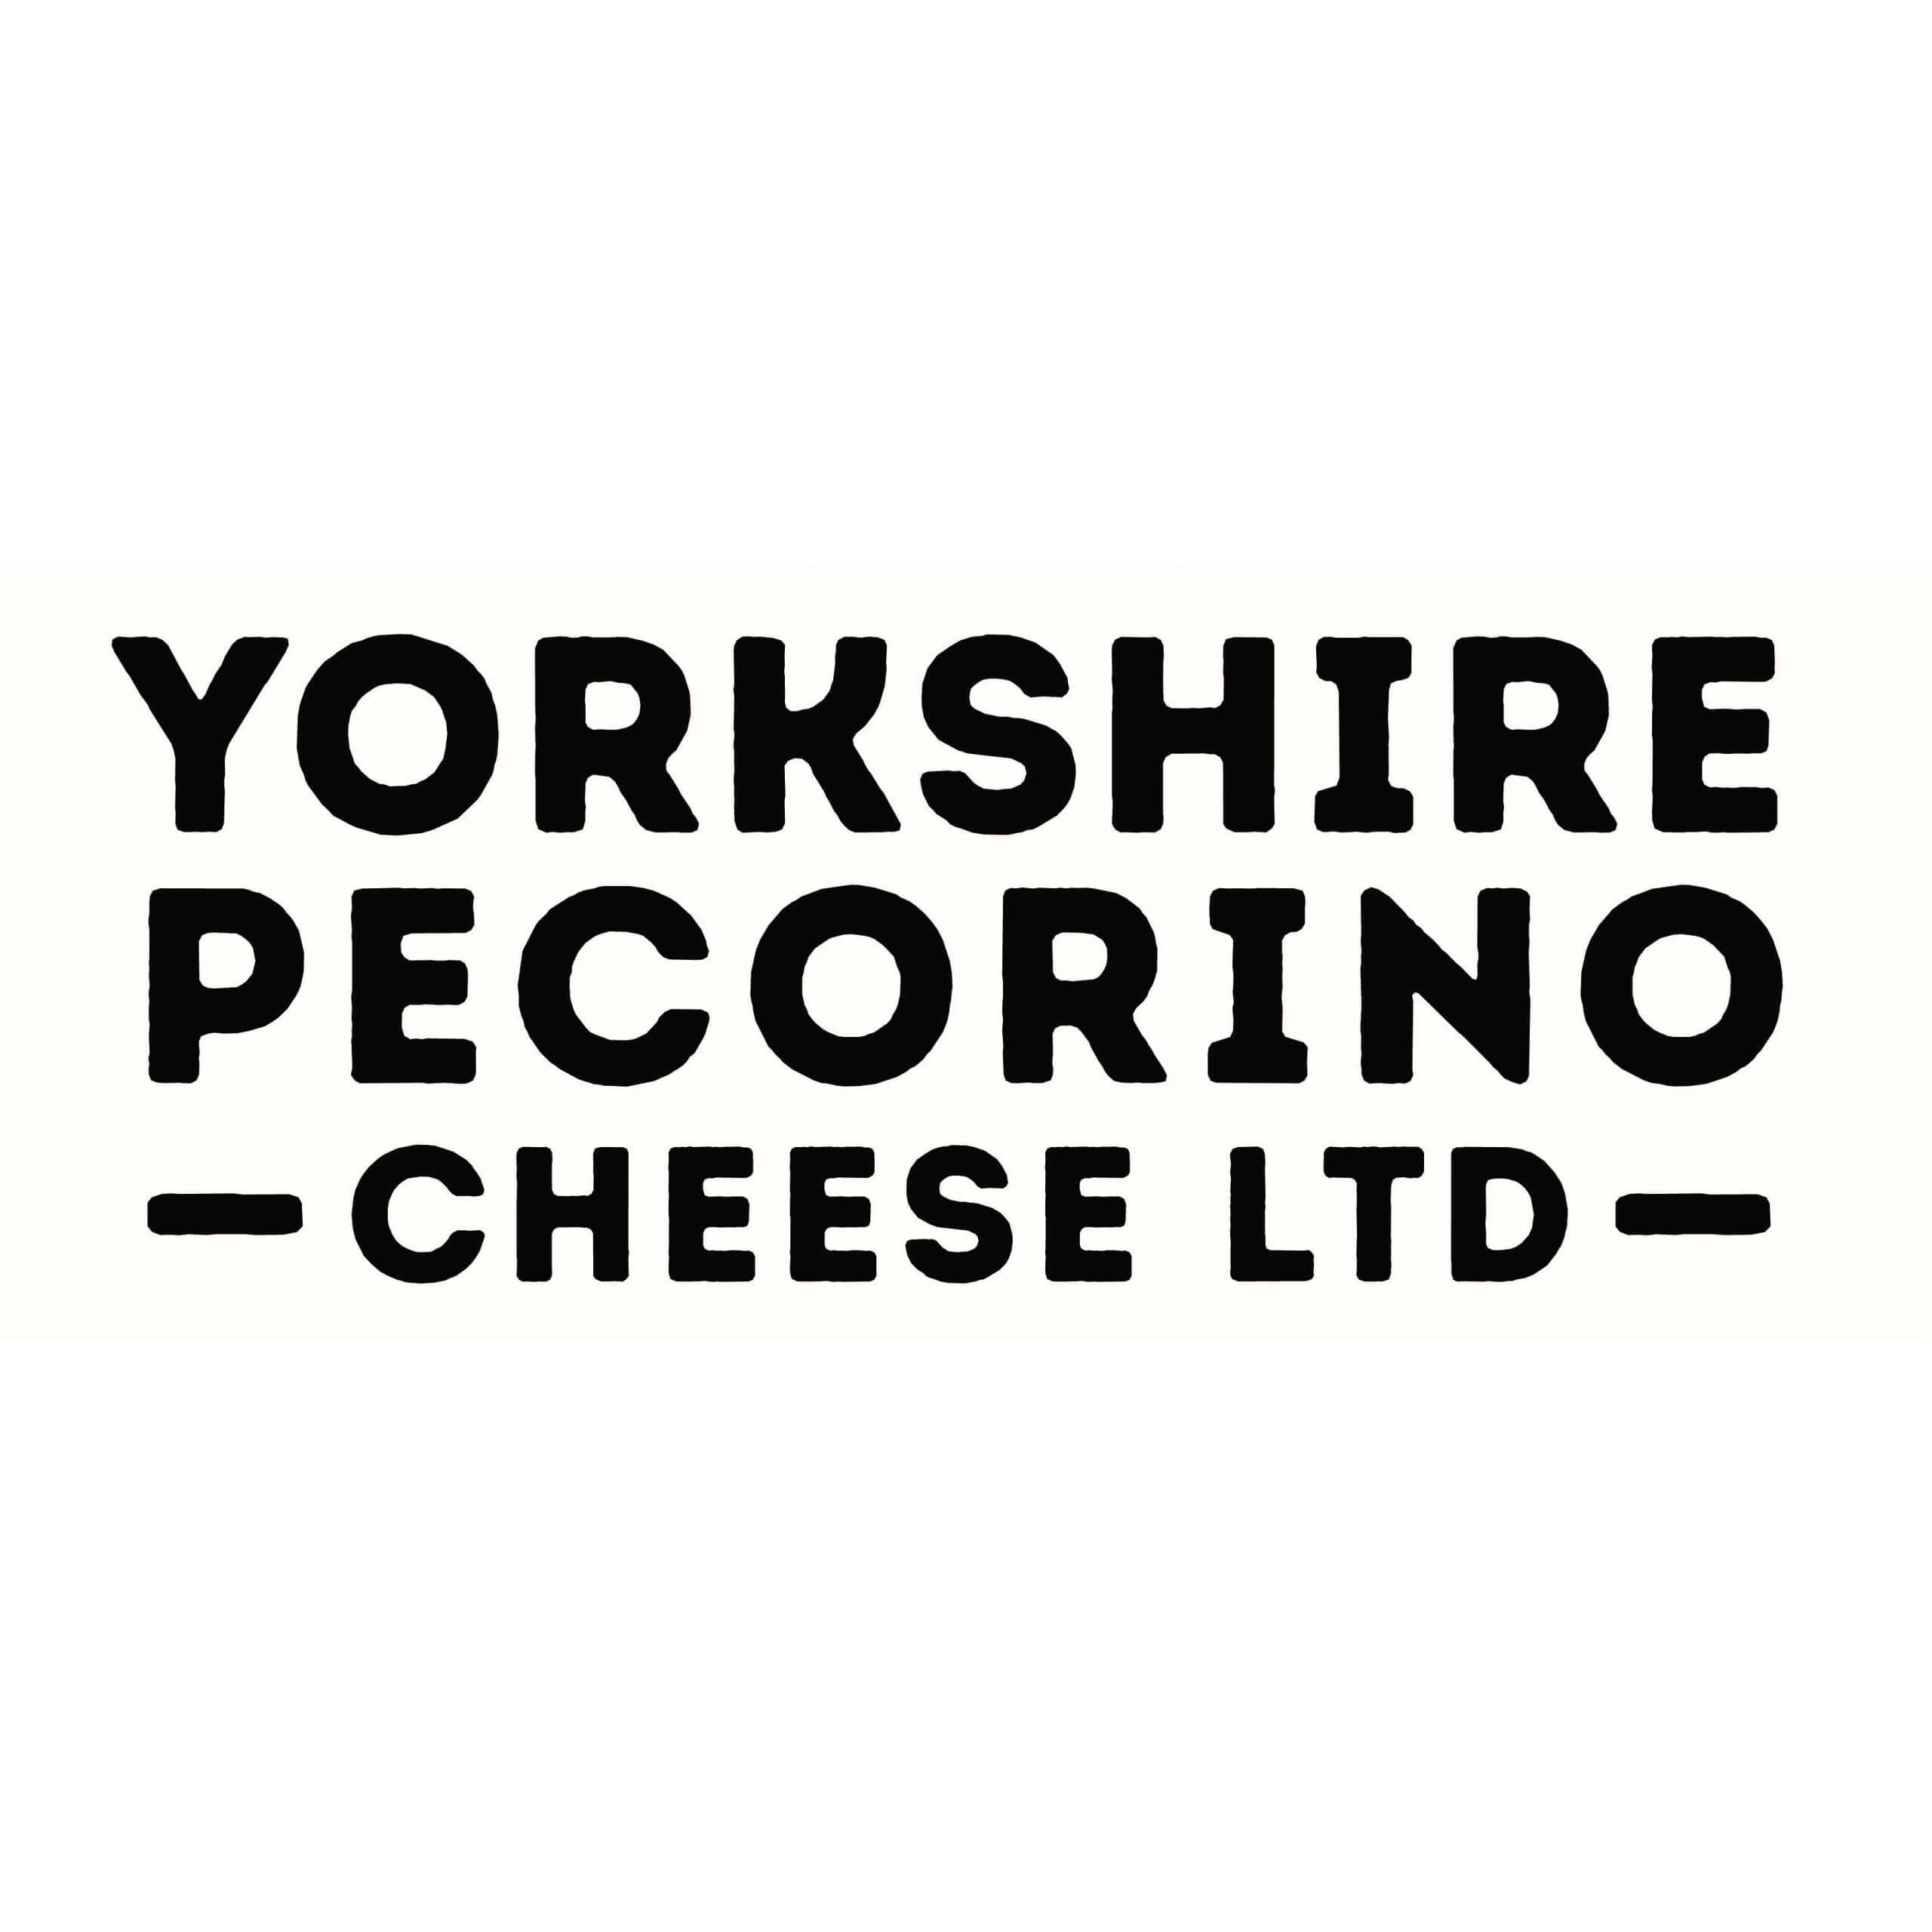 Yorkshire Pecorino brand logo